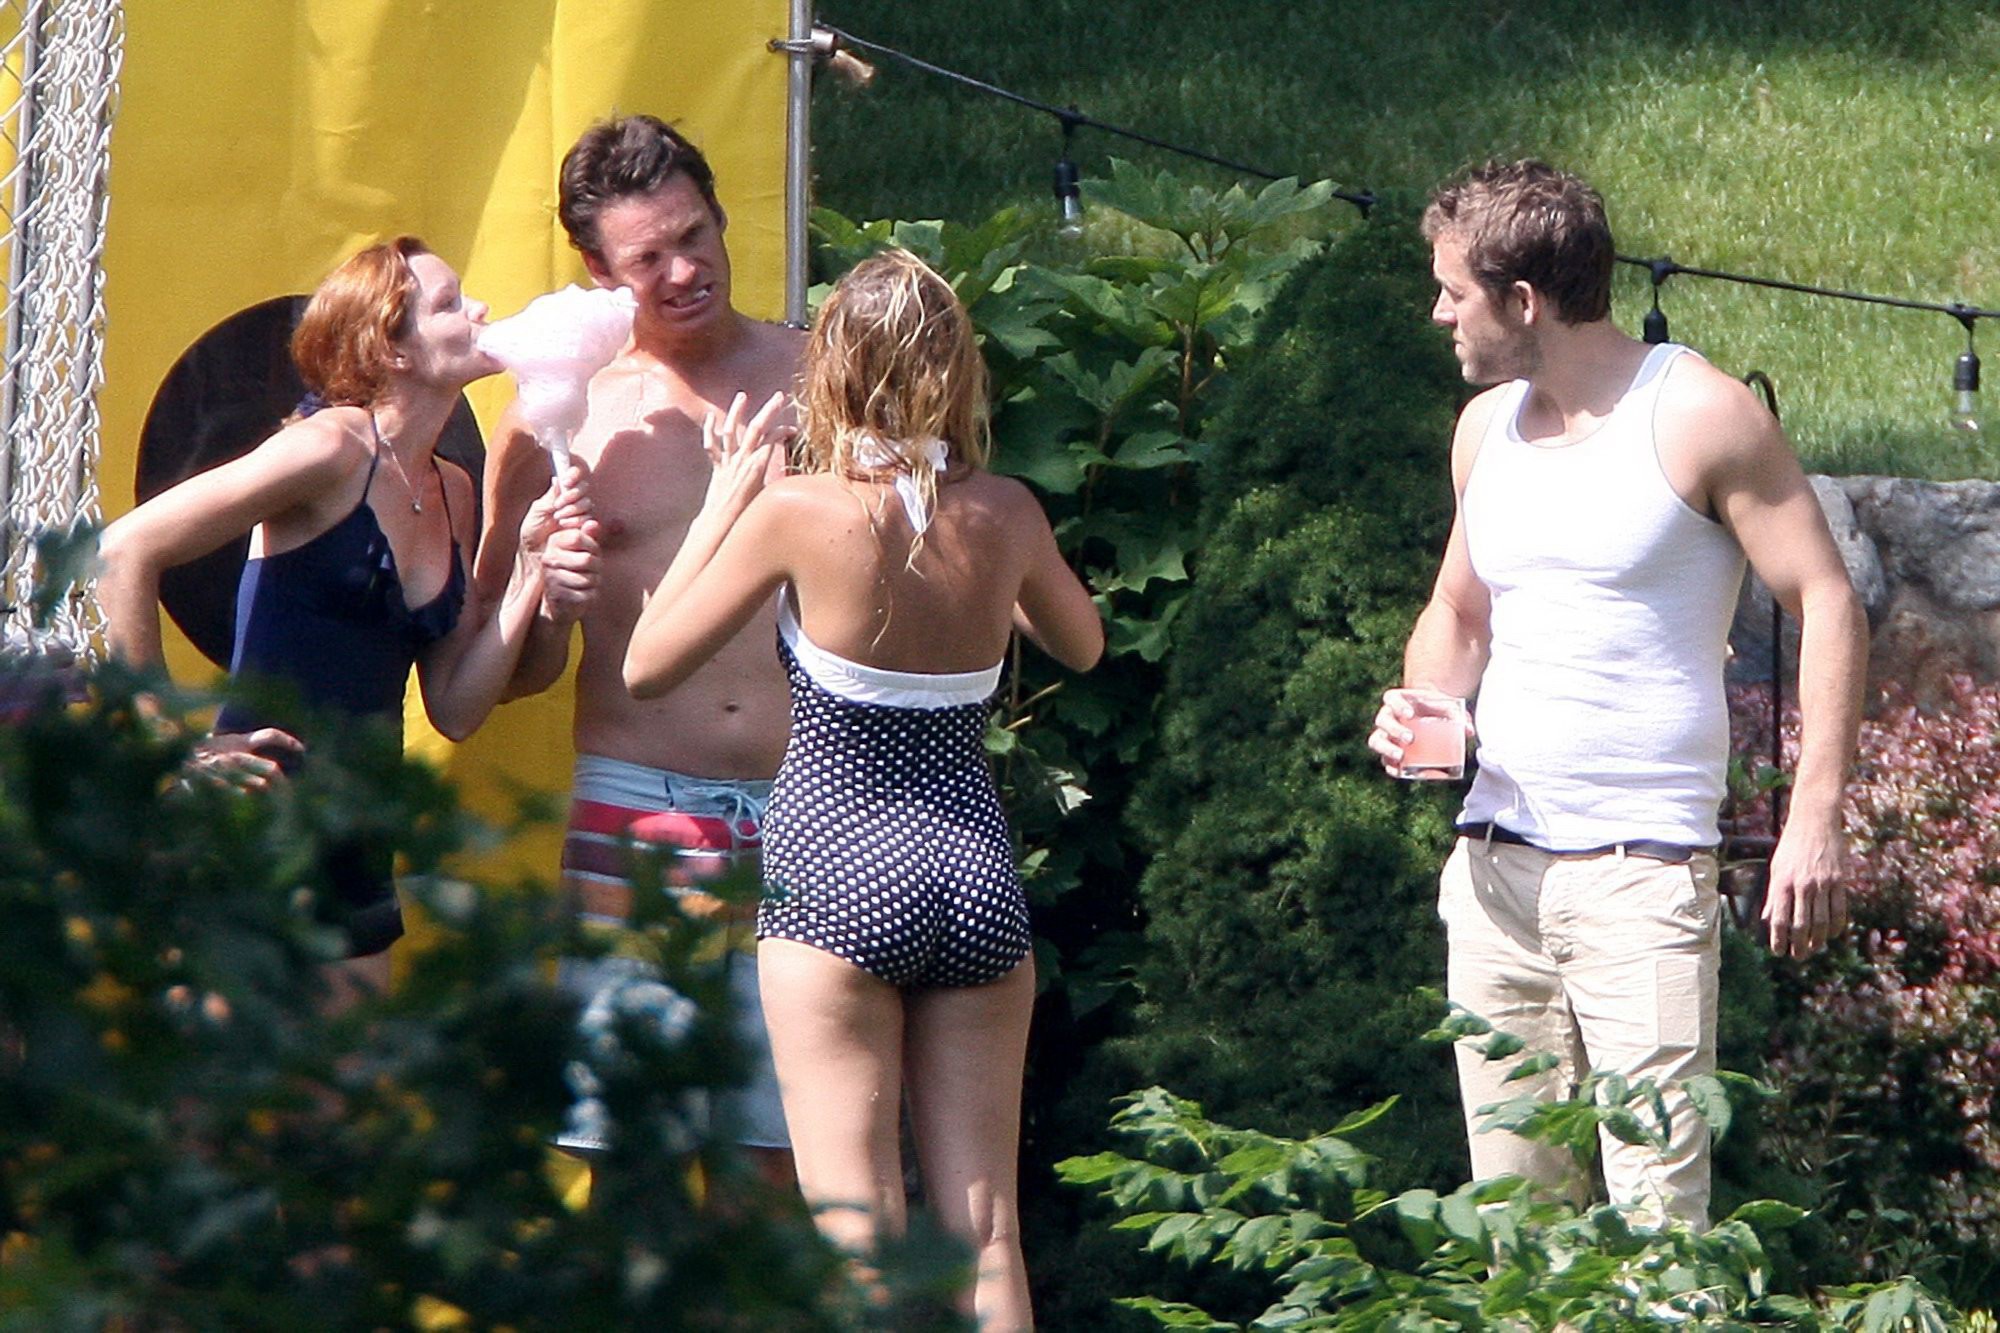 Blake vivace mostrando il suo culo in monokini a pois alla festa in piscina a nyc #75257914